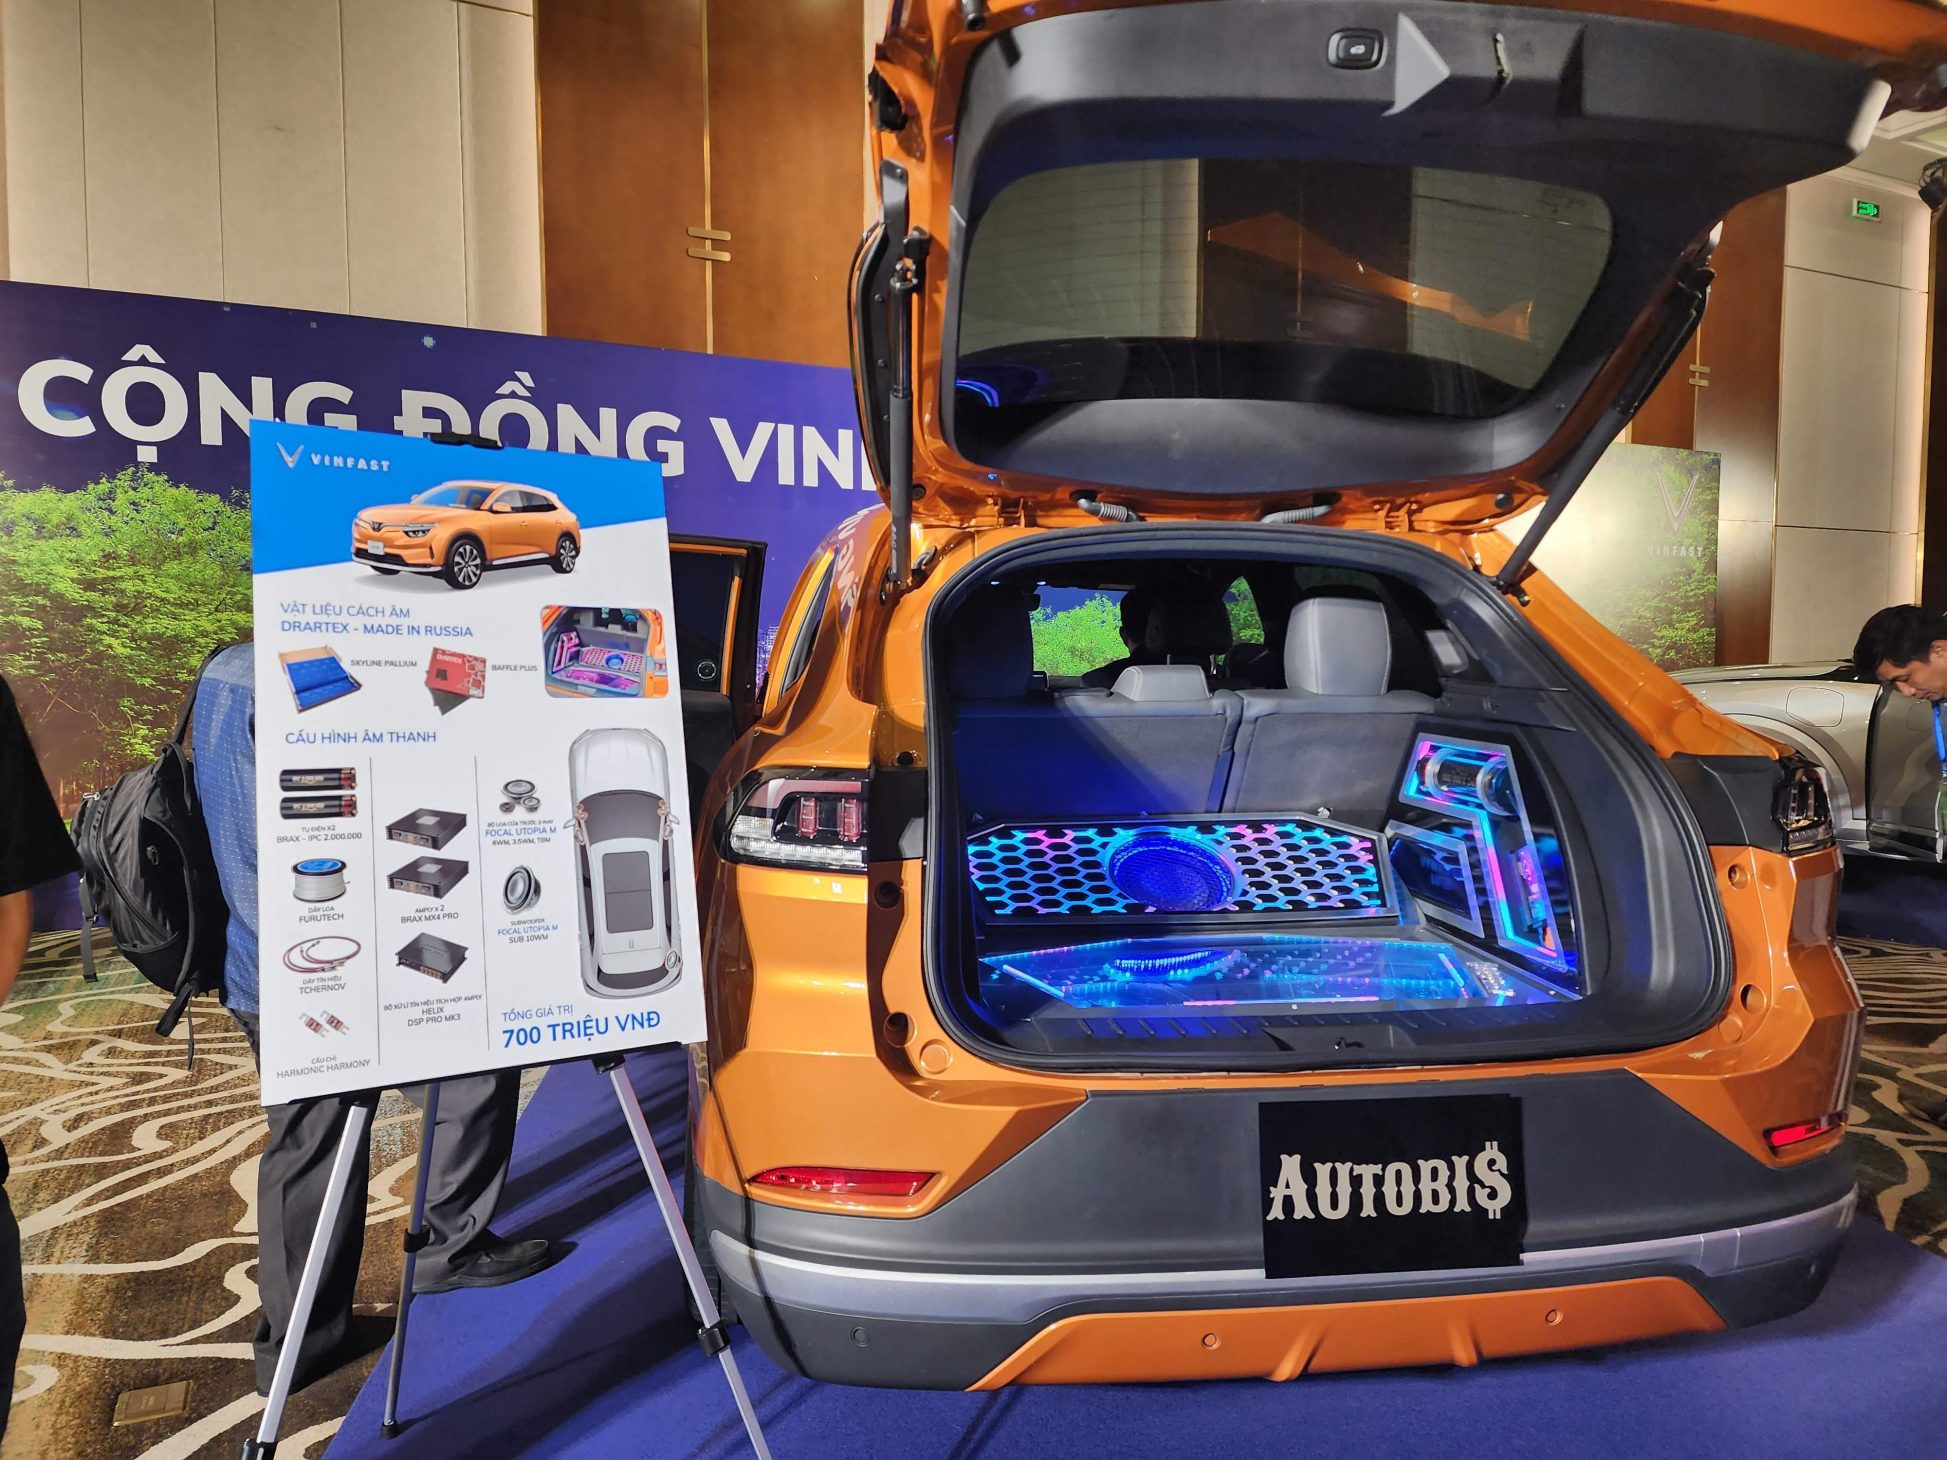 Triển lãm Xanh của VinFast, công nghệ hấp dẫn, mẫu xe VF3 xuất hiện - 20230818 134718